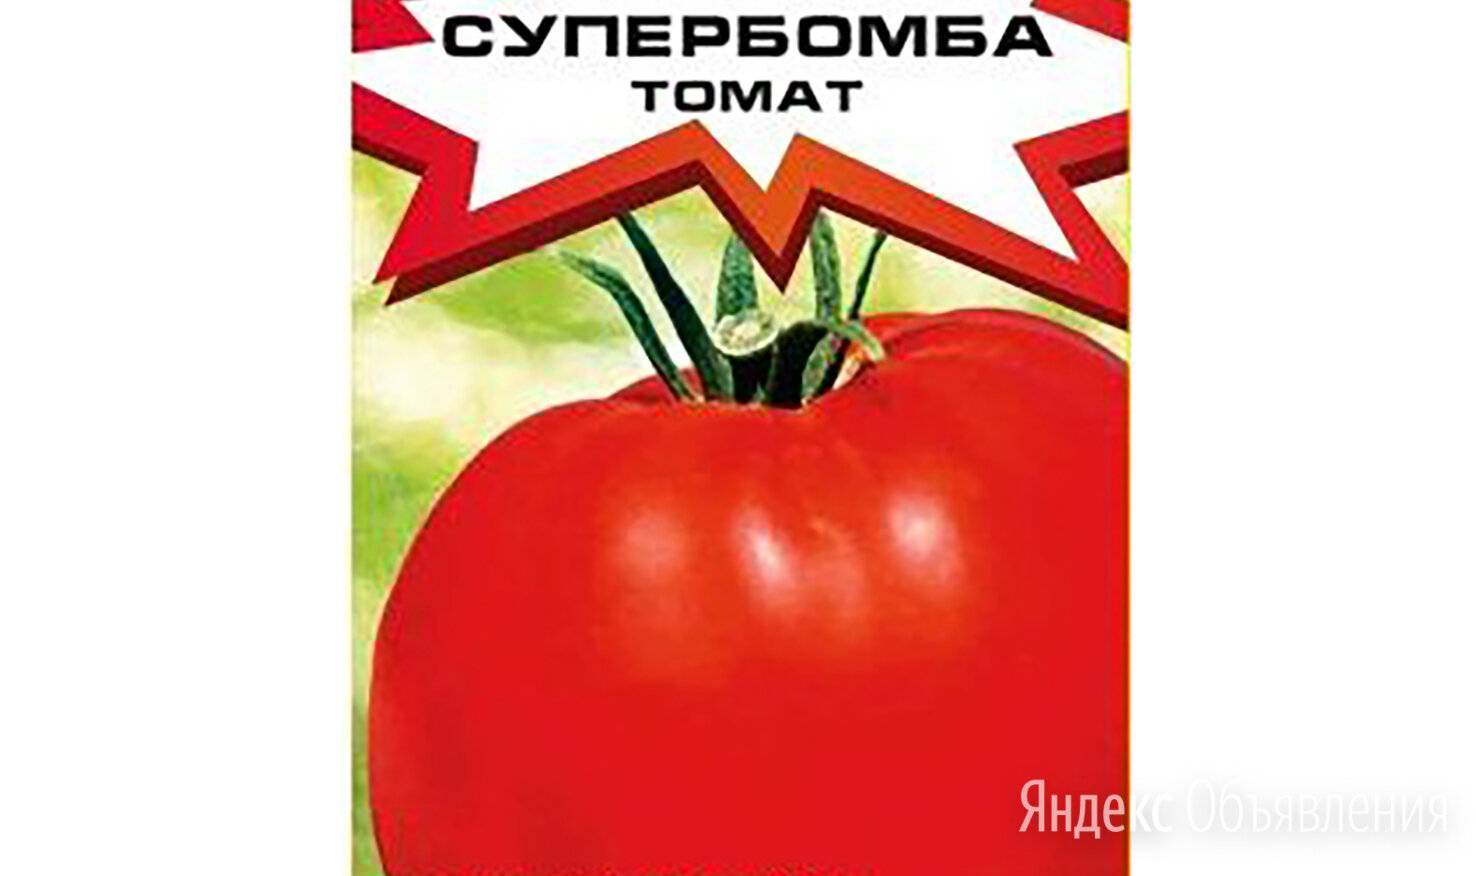 Томат супербомба: отзывы, фото, урожайность | tomatland.ru